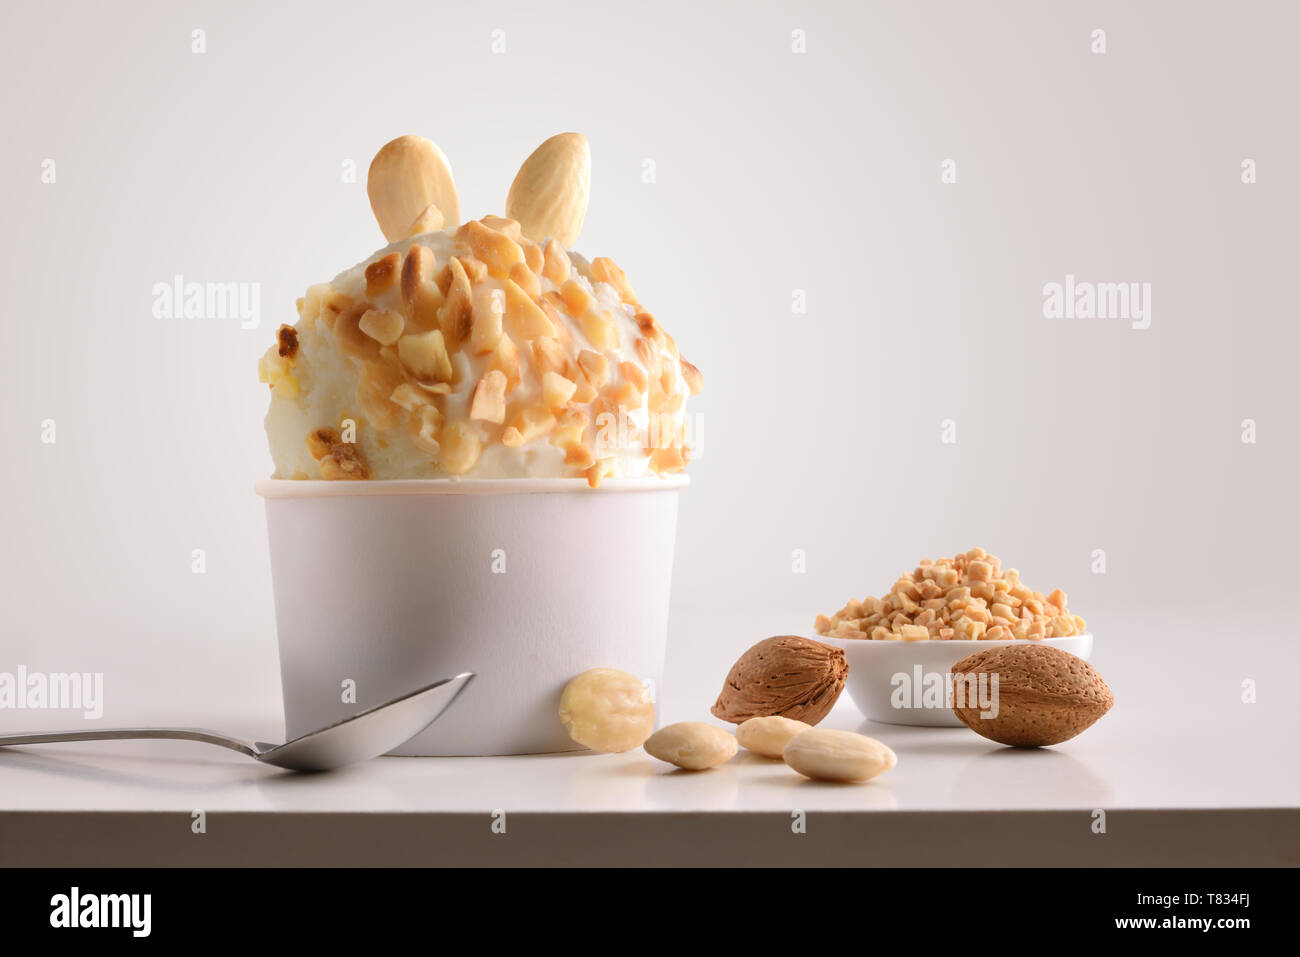 Zusammensetzung der Almond Ice Cream Ball in Pappbecher auf weißen Tisch mit Produkten von Ornament und Ausarbeitung isoliert Hintergrund. Horizontale Zusammensetzung Stockfoto